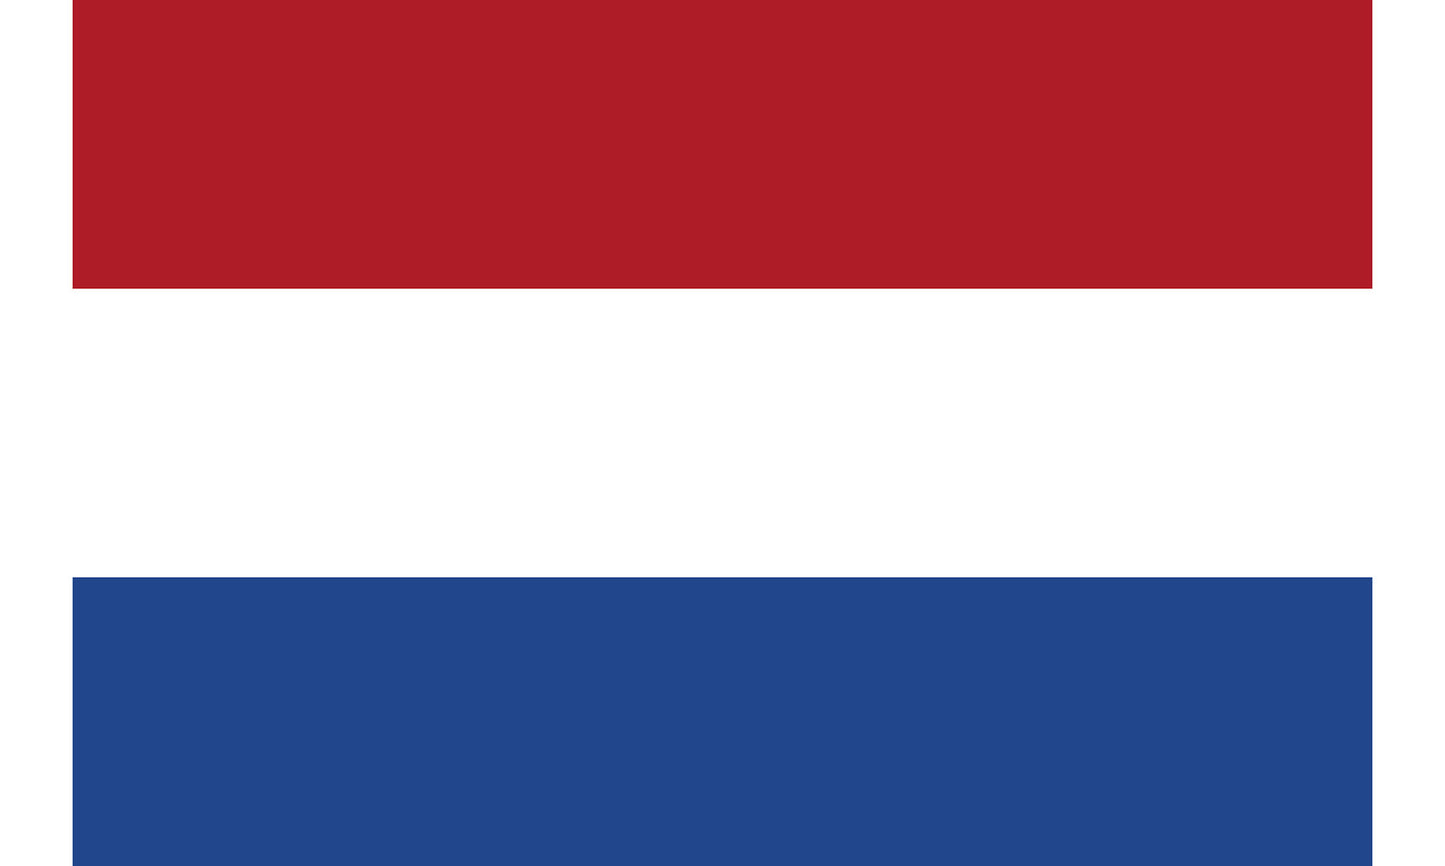 UF-NTL-150x90 - государственный флаг Нидерландов